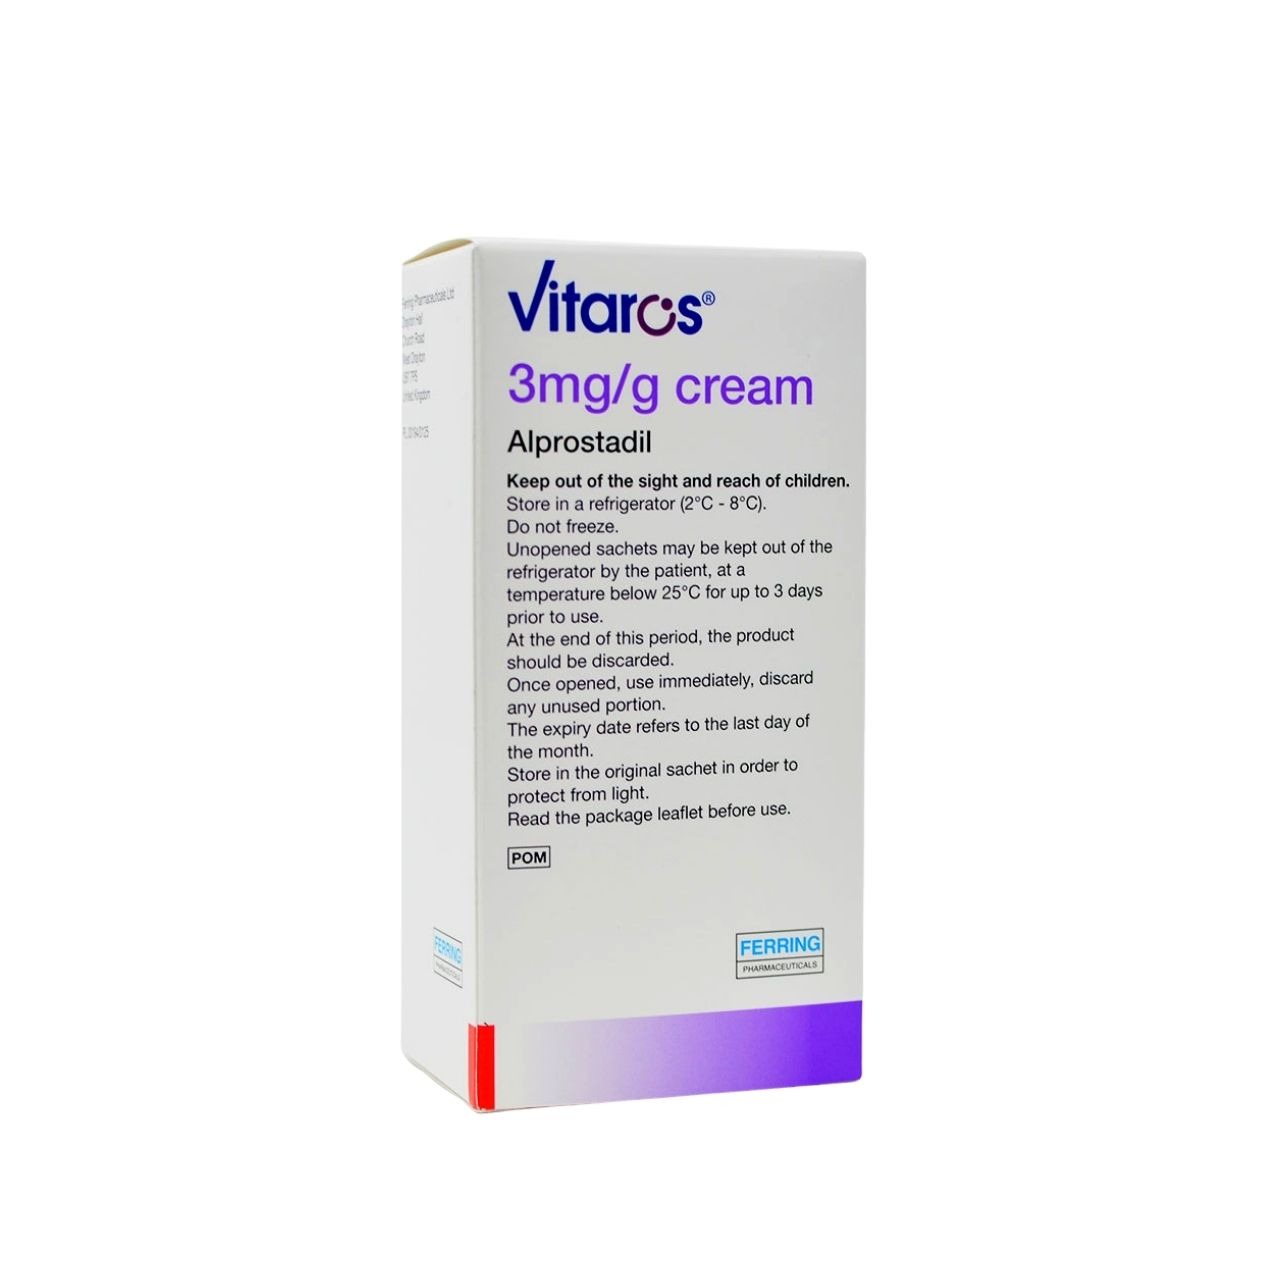 Vitaros cream